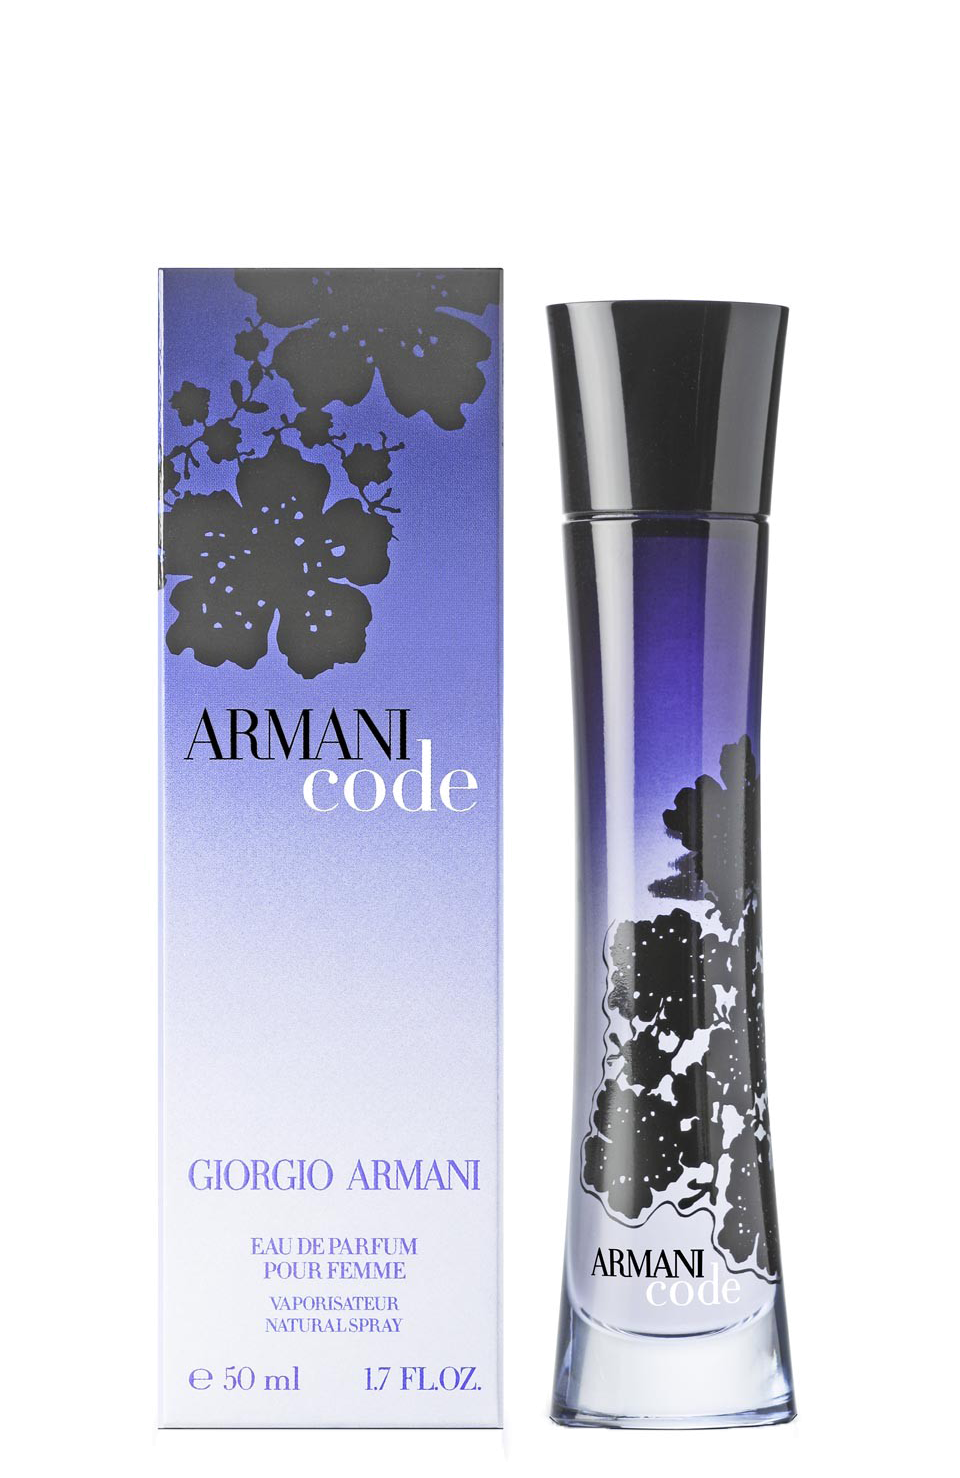 Духи Giorgio Armani Armani code. Armani code Giorgio Armani женские. Armani code pour femme. Духи Armani code femme.